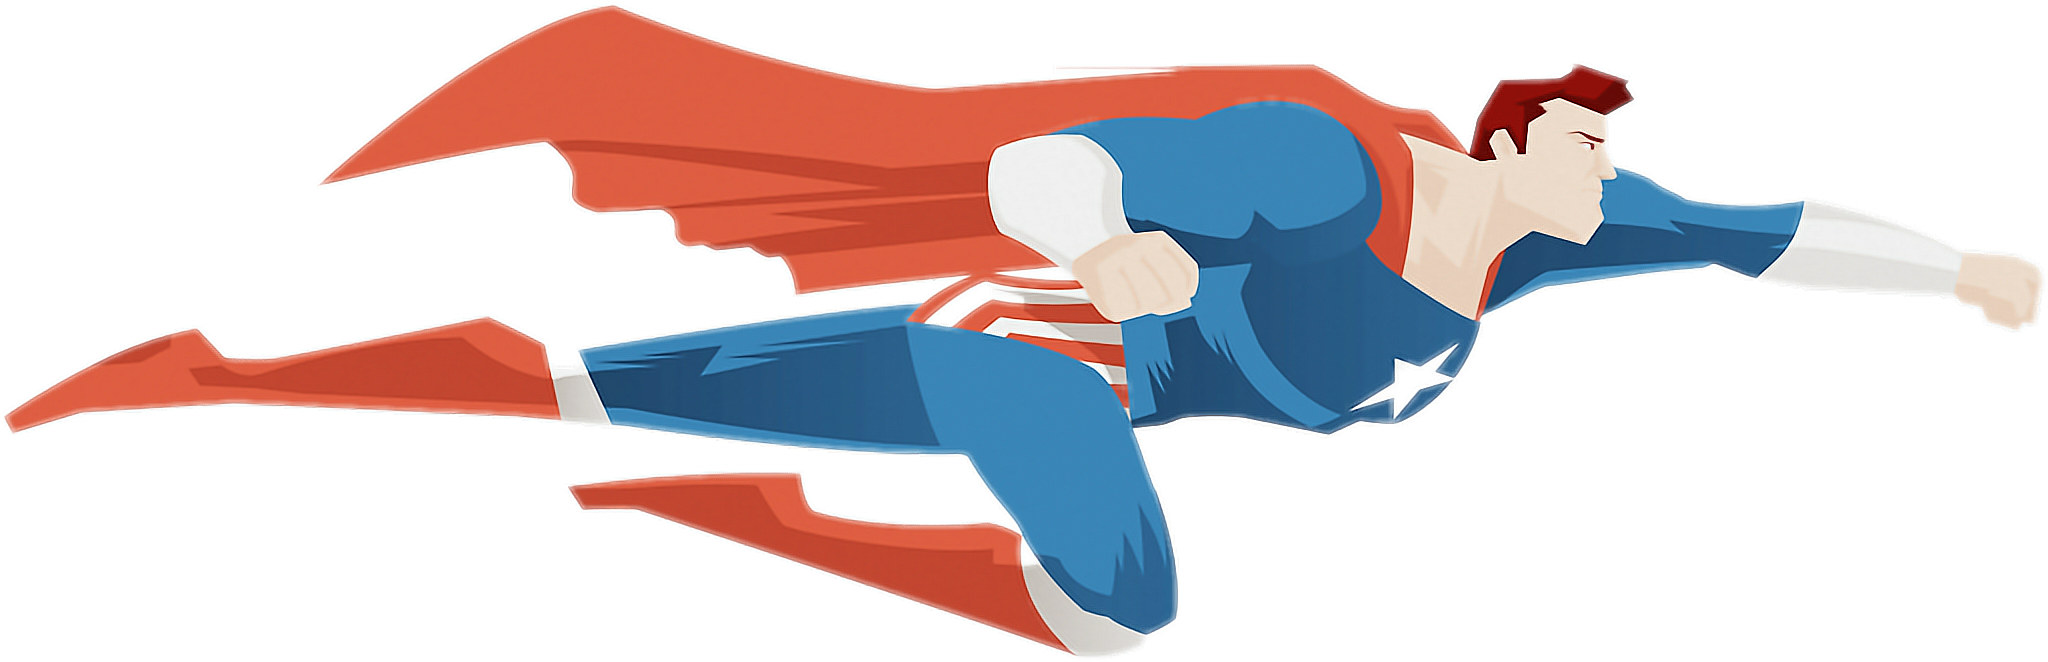 Superman speed up. Супермен летит. Летающий герой. Супермен в полете боком. Супермен на прозрачном фоне.